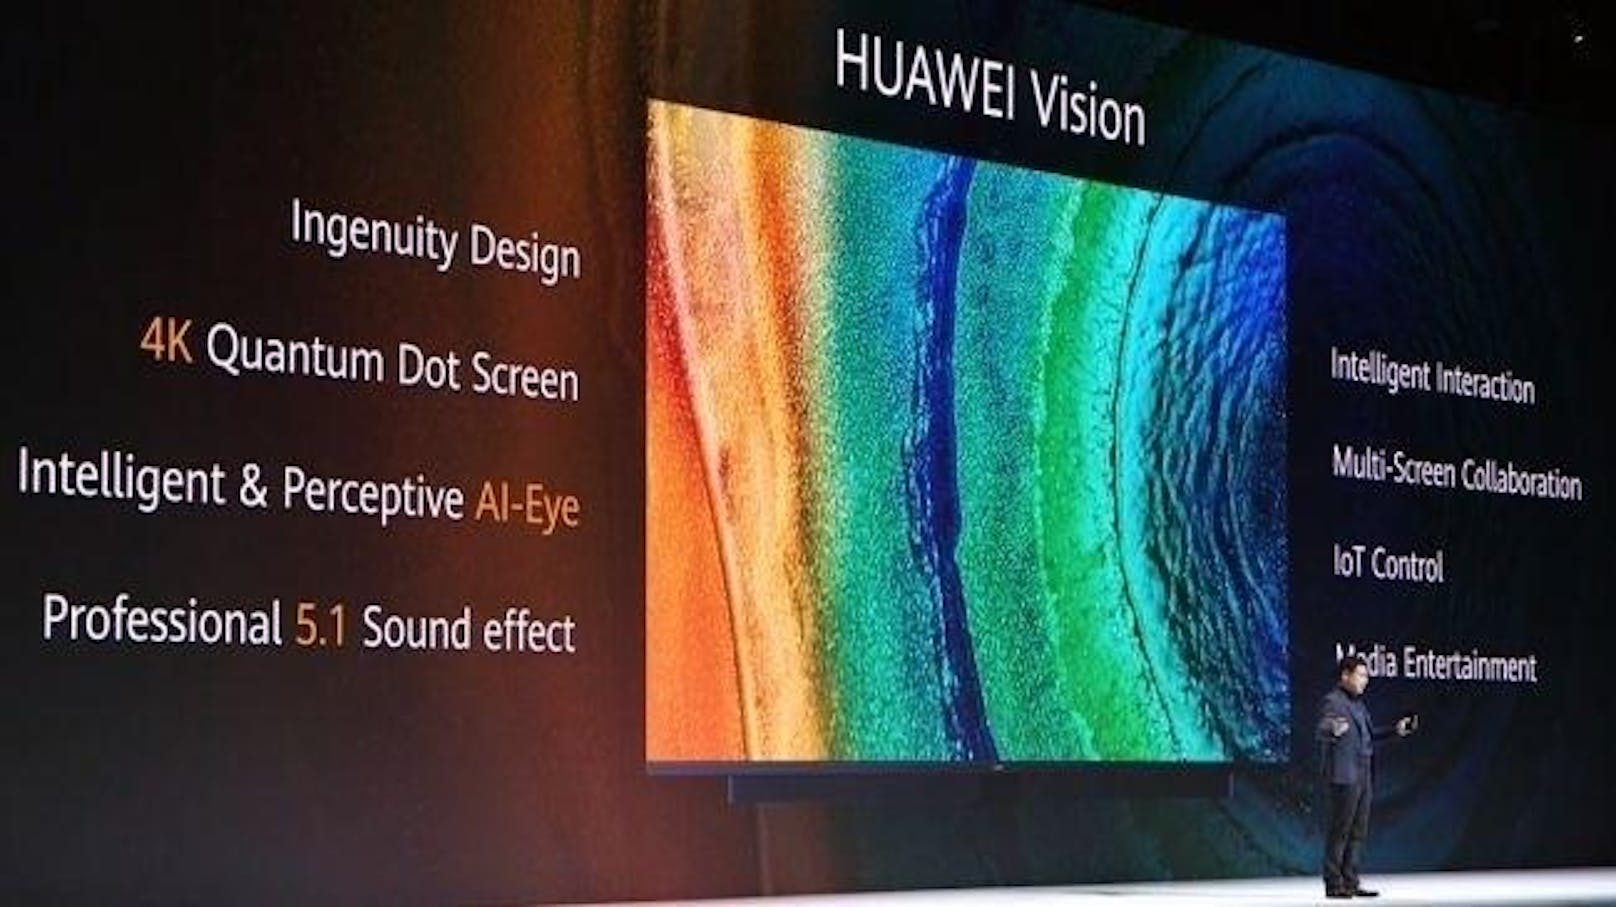 Auch einen Fernseher stellte Huawei vor. Der Huawei Vision soll auf einem Huawei-eigenen Betriebssystem laufen und in den Größen 55, 65 und 75 Zoll erscheinen.